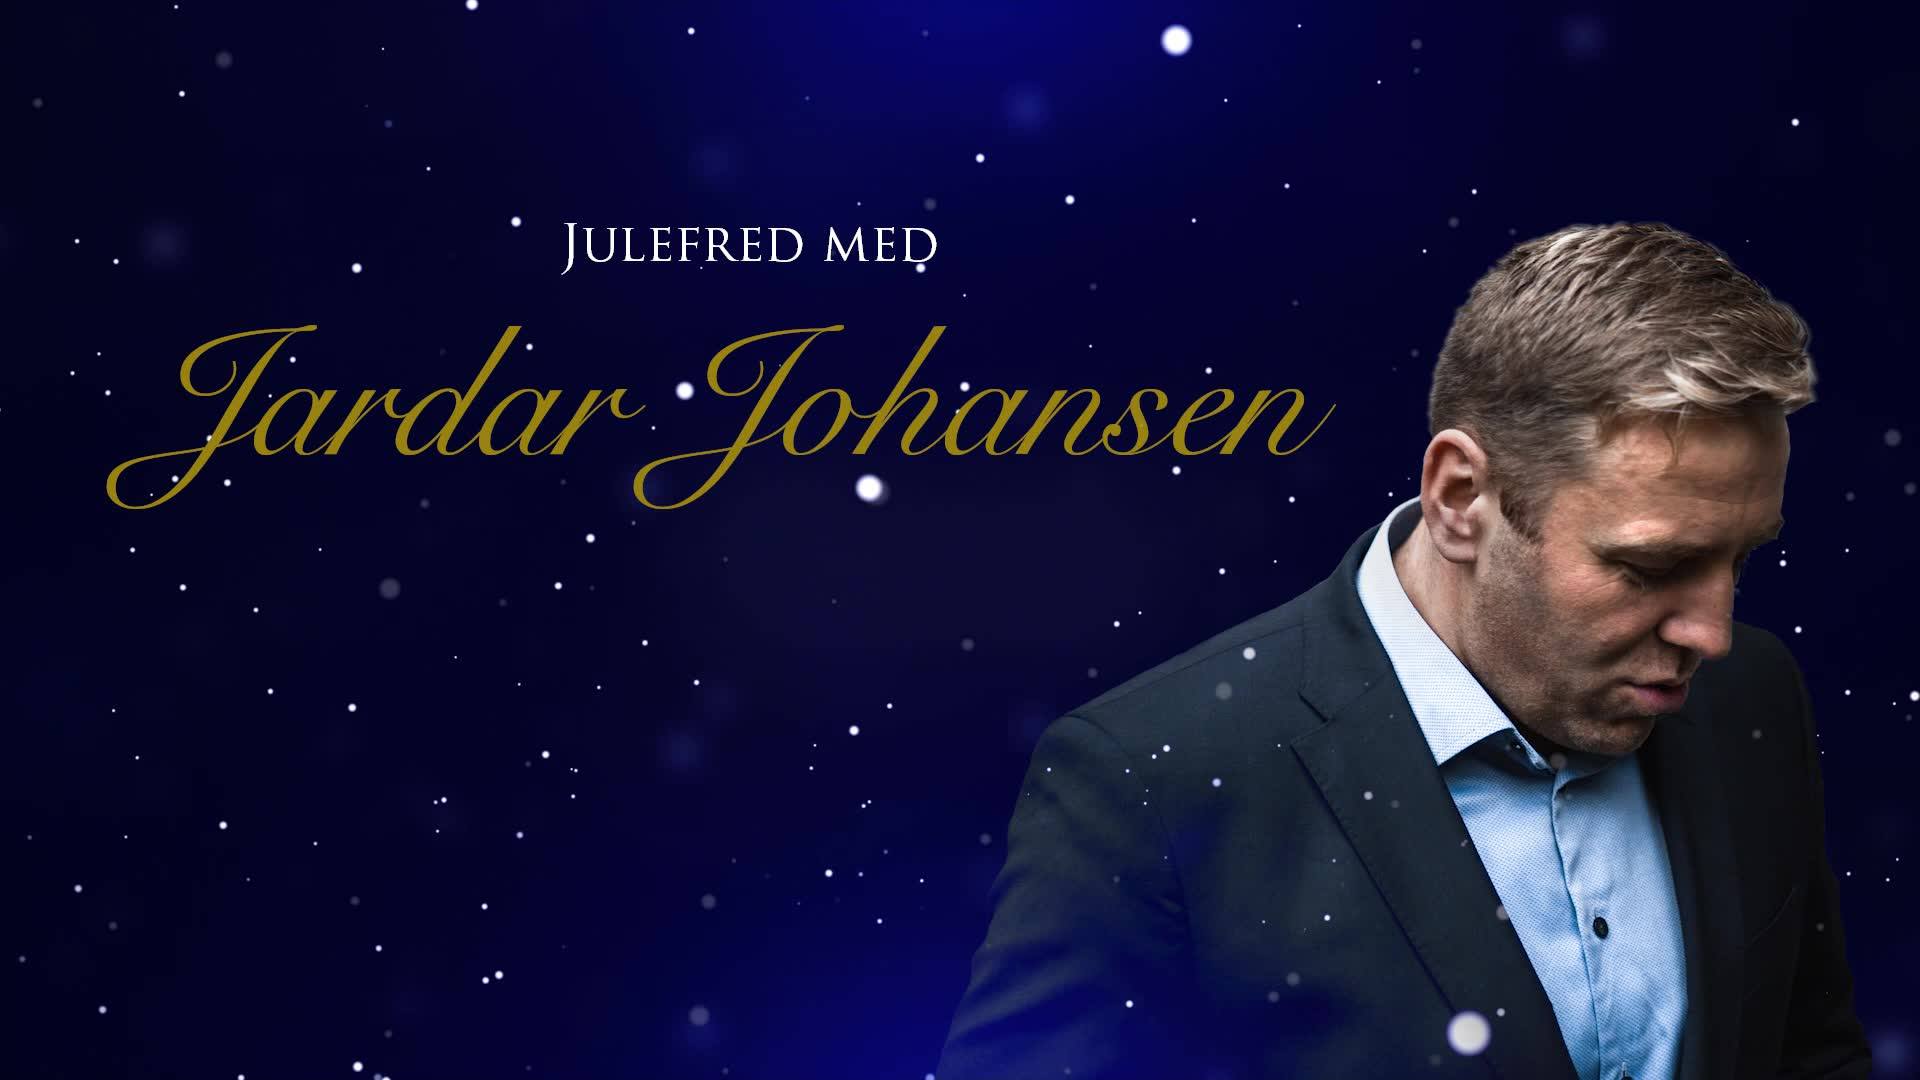 Foto; Jardar Johansen - Julefred